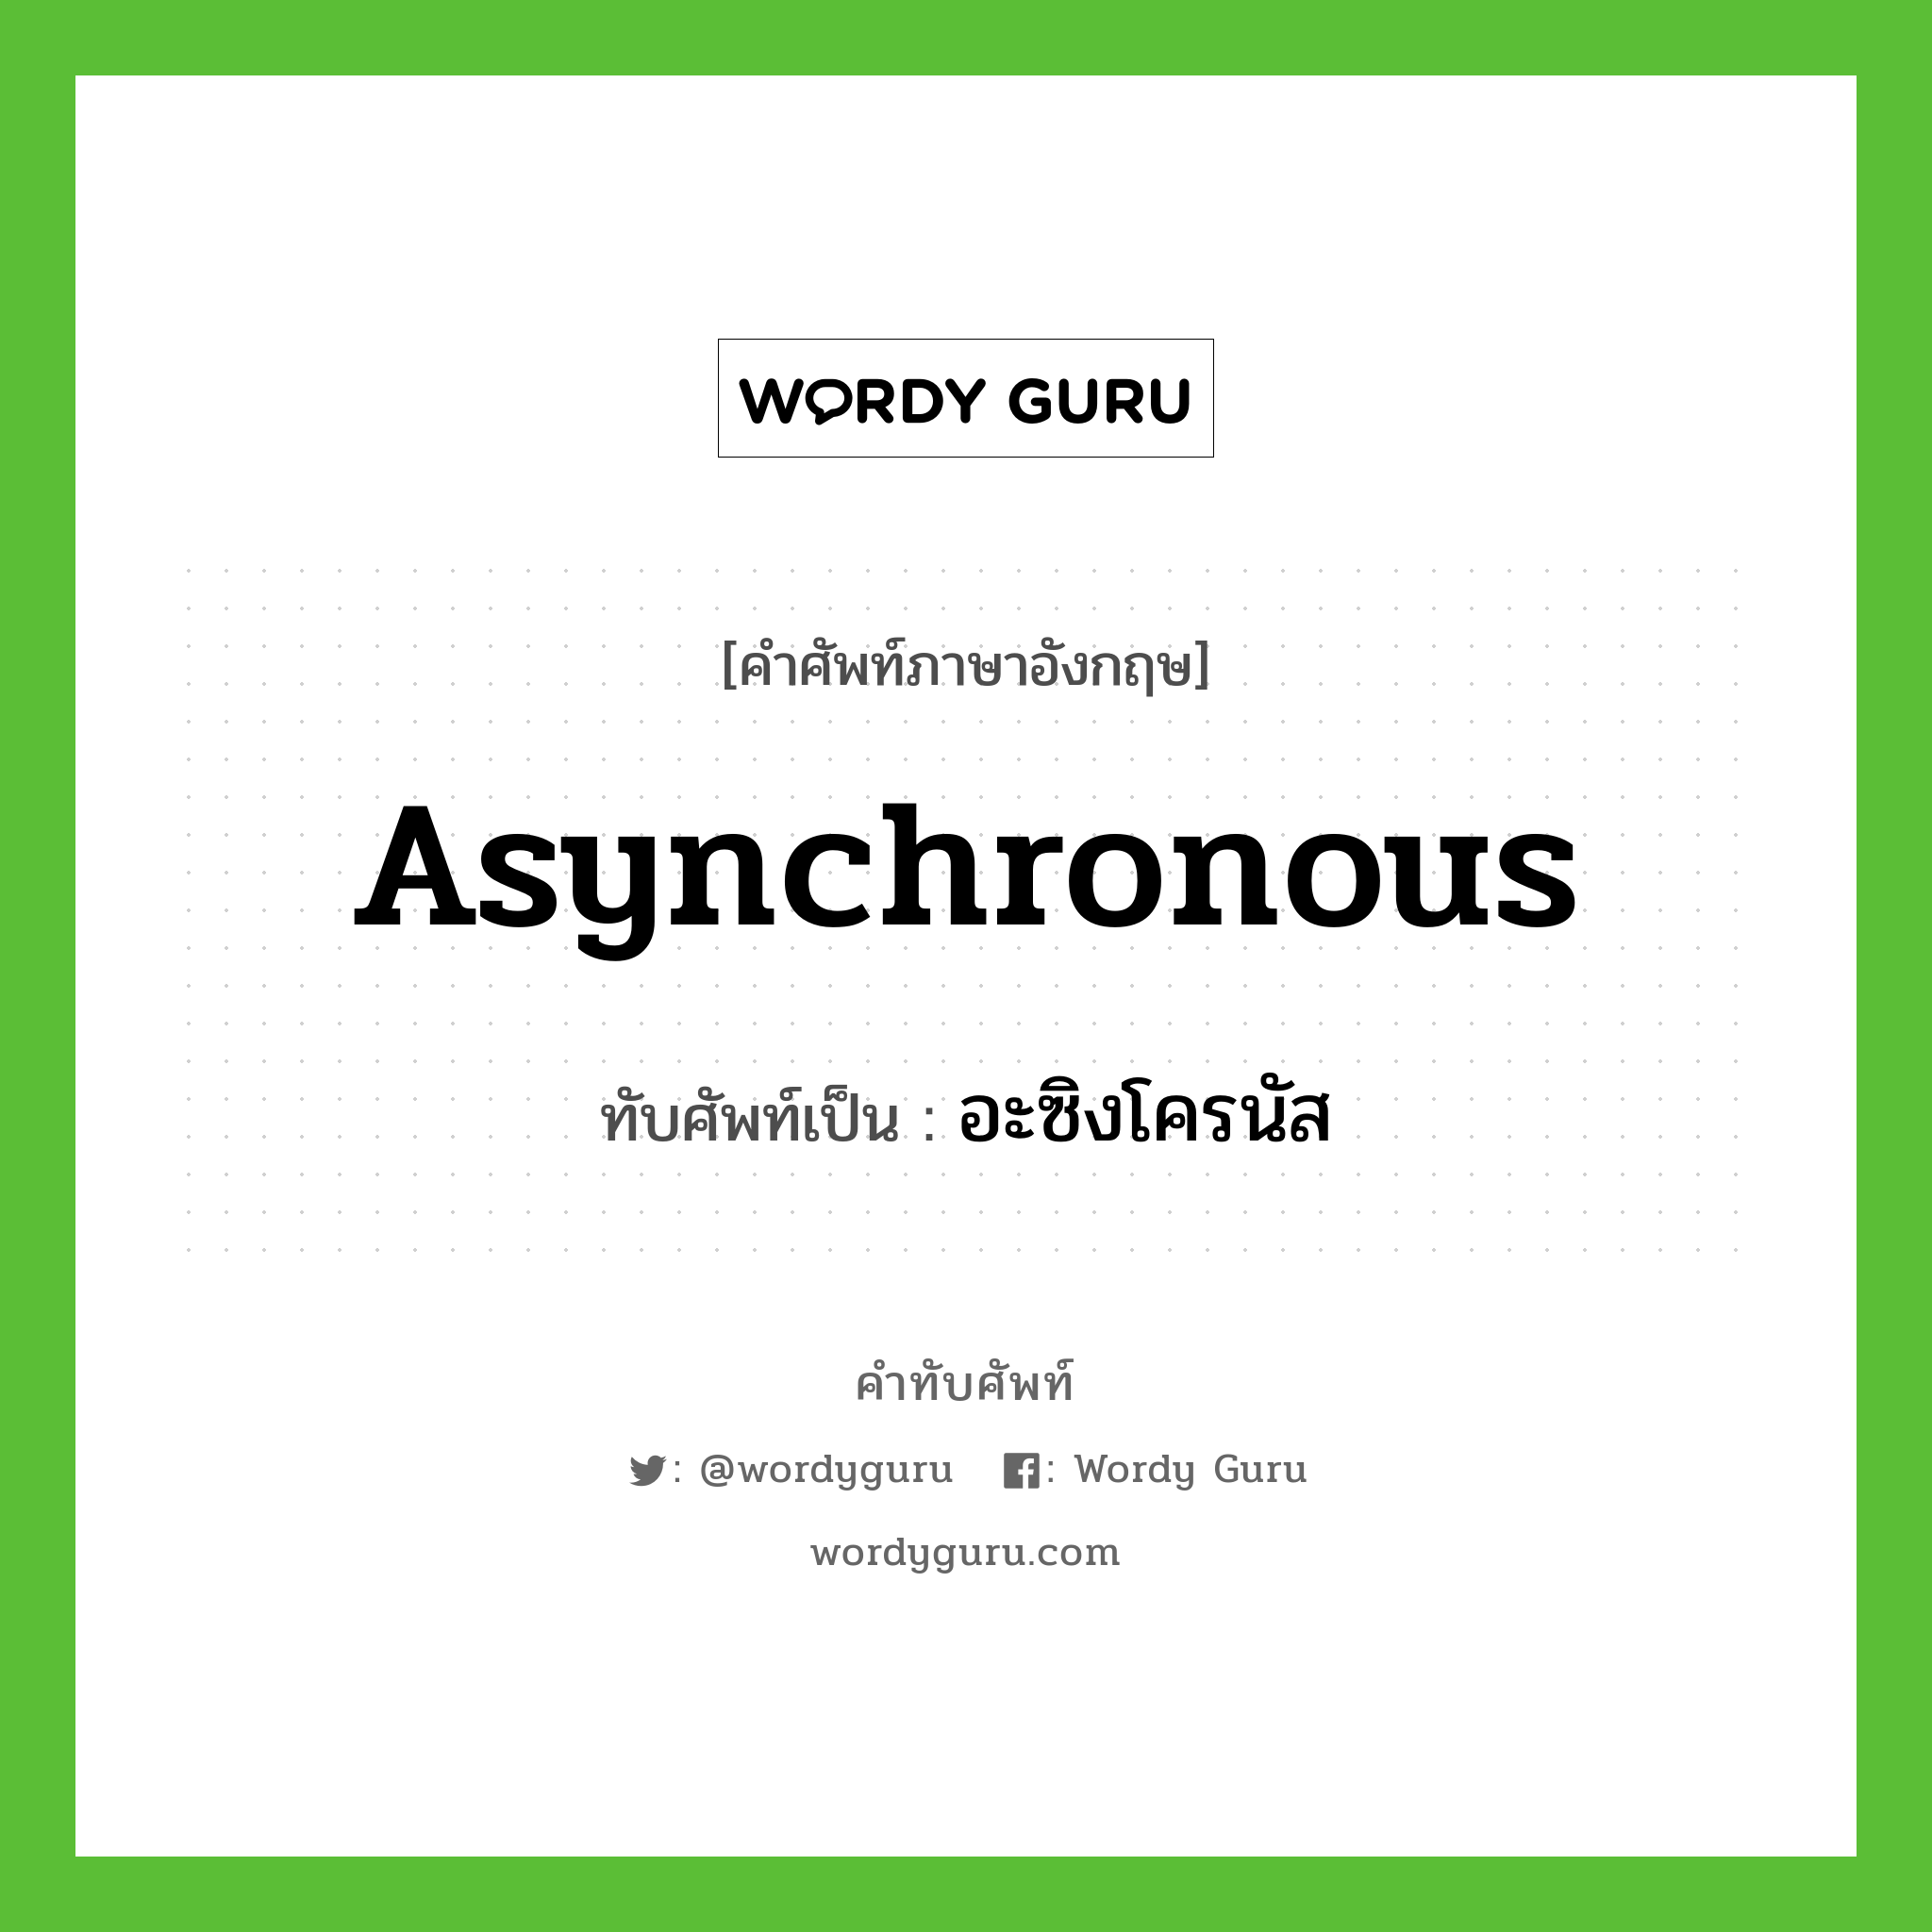 asynchronous เขียนเป็นคำไทยว่าอะไร?, คำศัพท์ภาษาอังกฤษ asynchronous ทับศัพท์เป็น อะซิงโครนัส